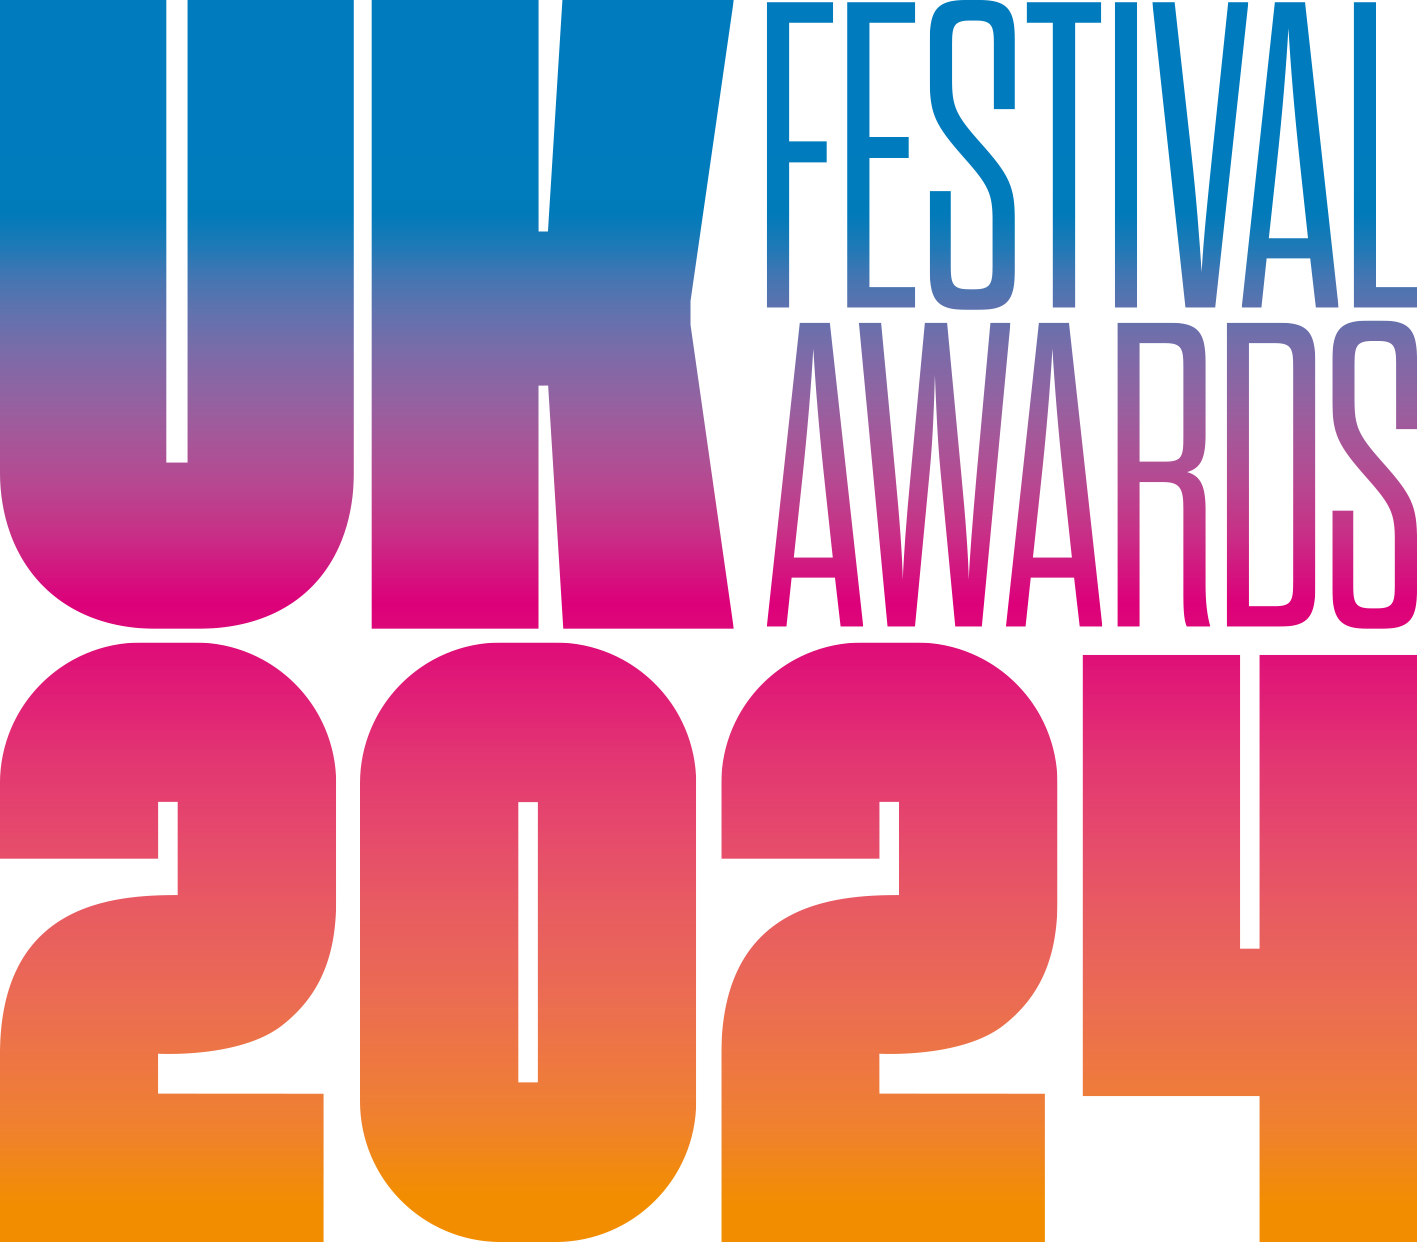 UK Festival Awards 2022